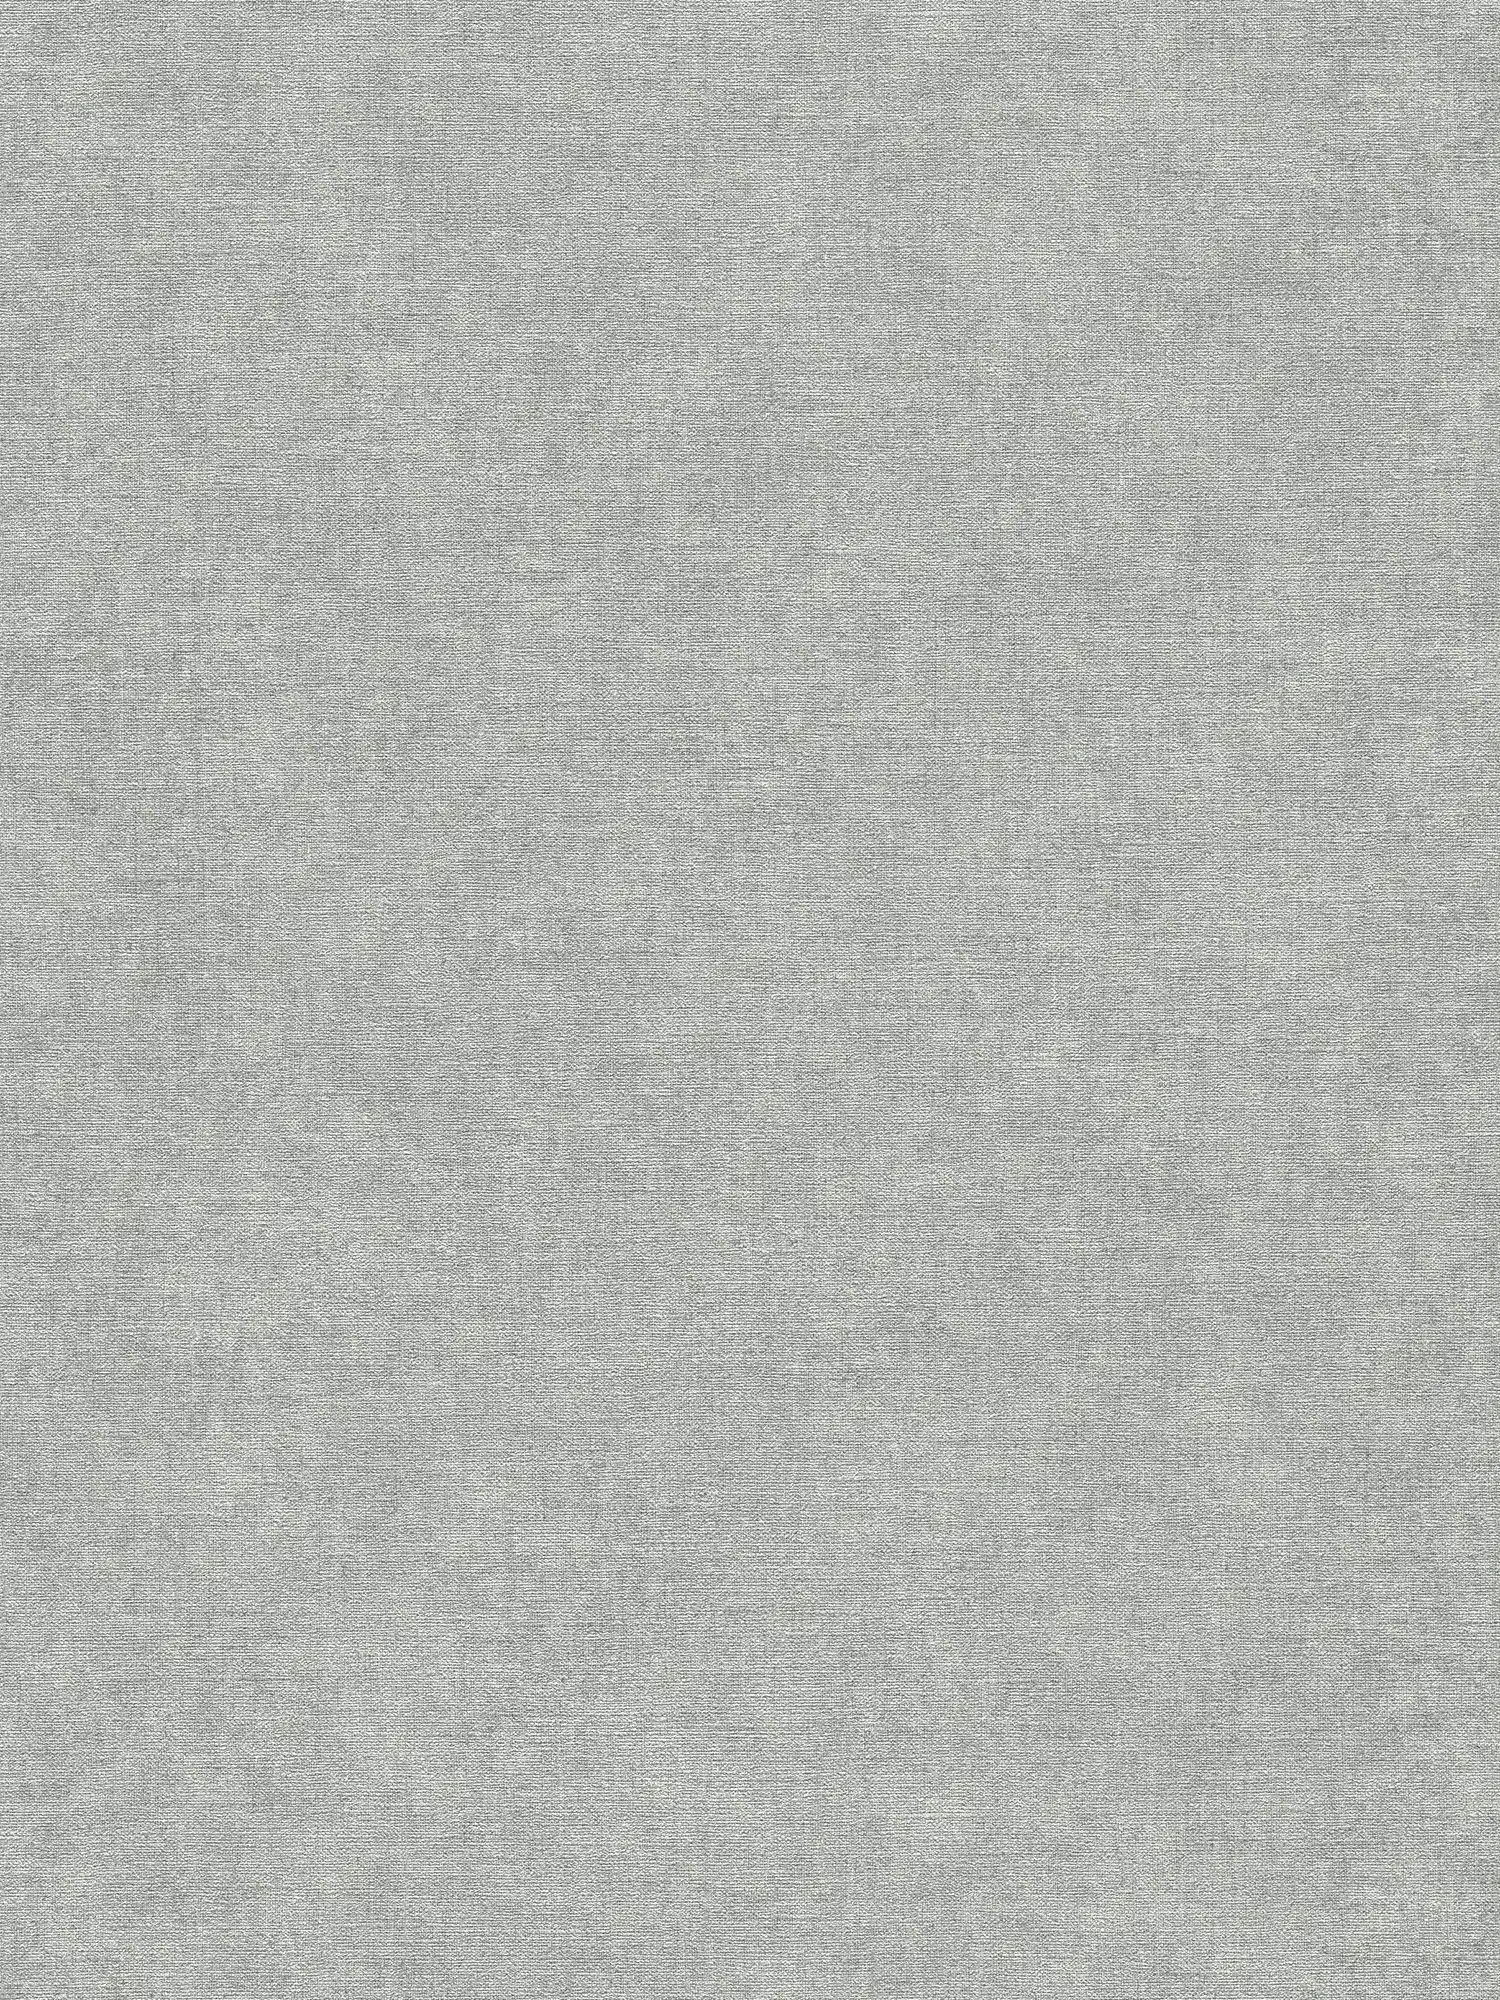 Papel pintado de tejido-no-tejido con textura ligera y aspecto de yeso suave - gris, gris claro
